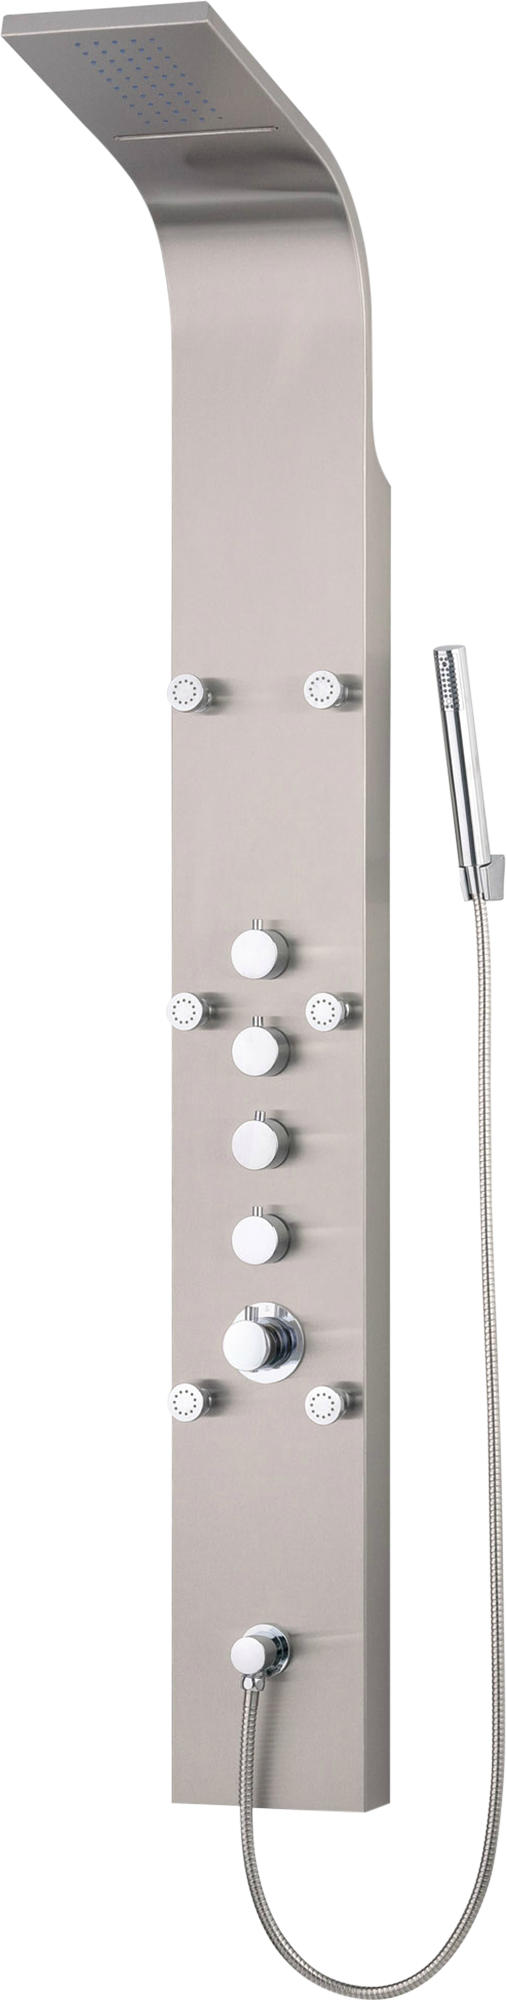 Columna de ducha hidromasaje termostática edouard rousseau orys gris